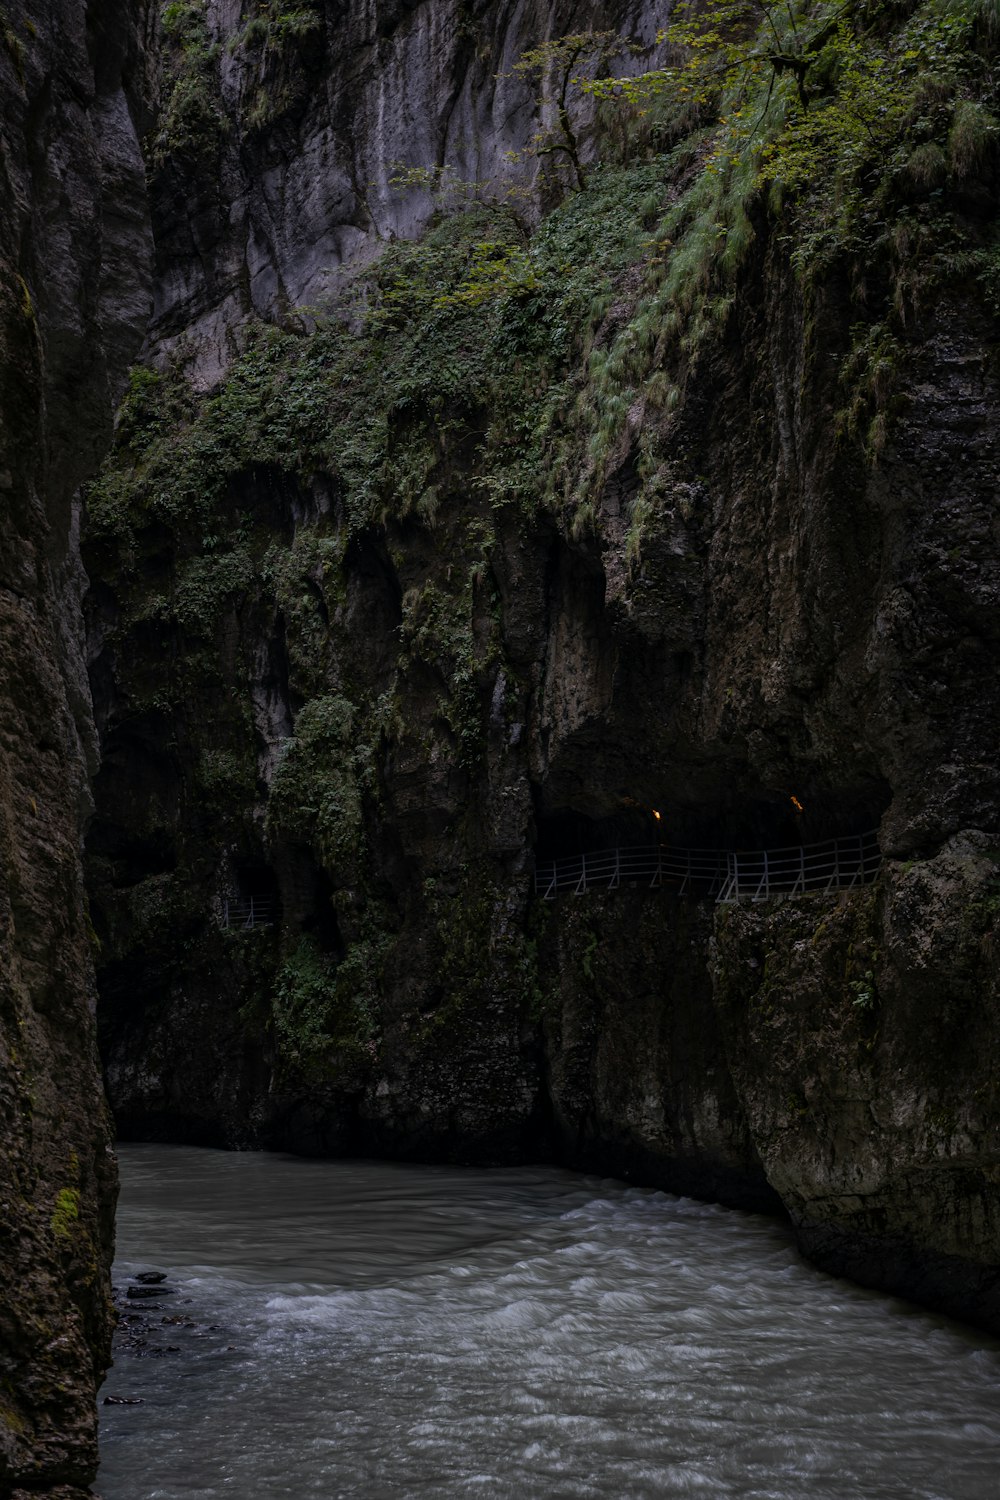 une rivière coulant à travers un canyon verdoyant